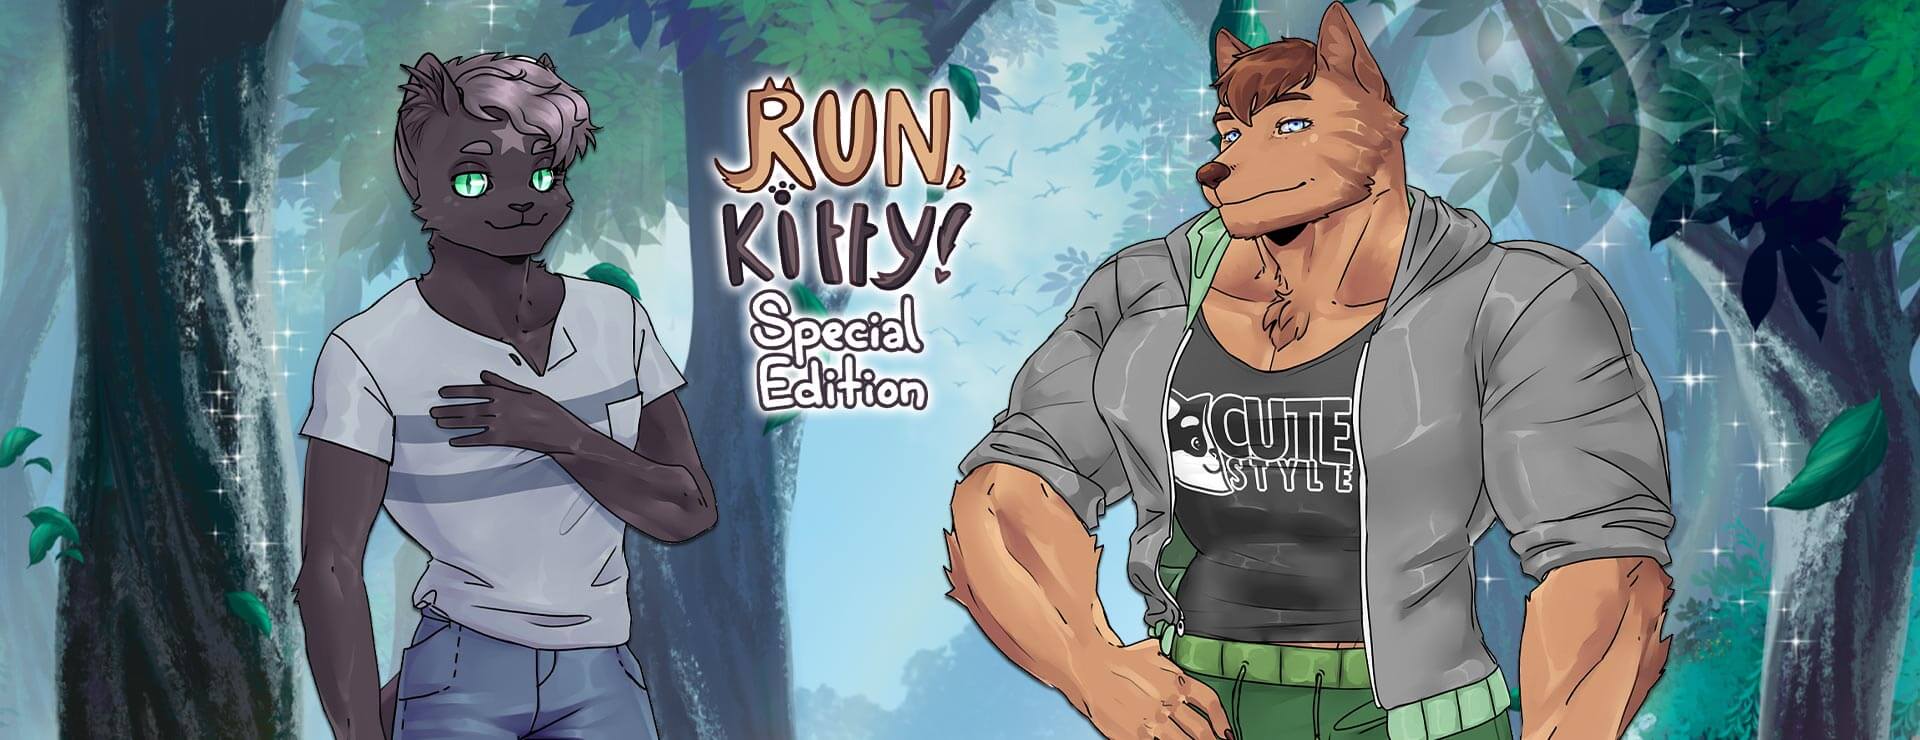 Run, Kitty! Special Edition - ビジュアルノベル ゲーム